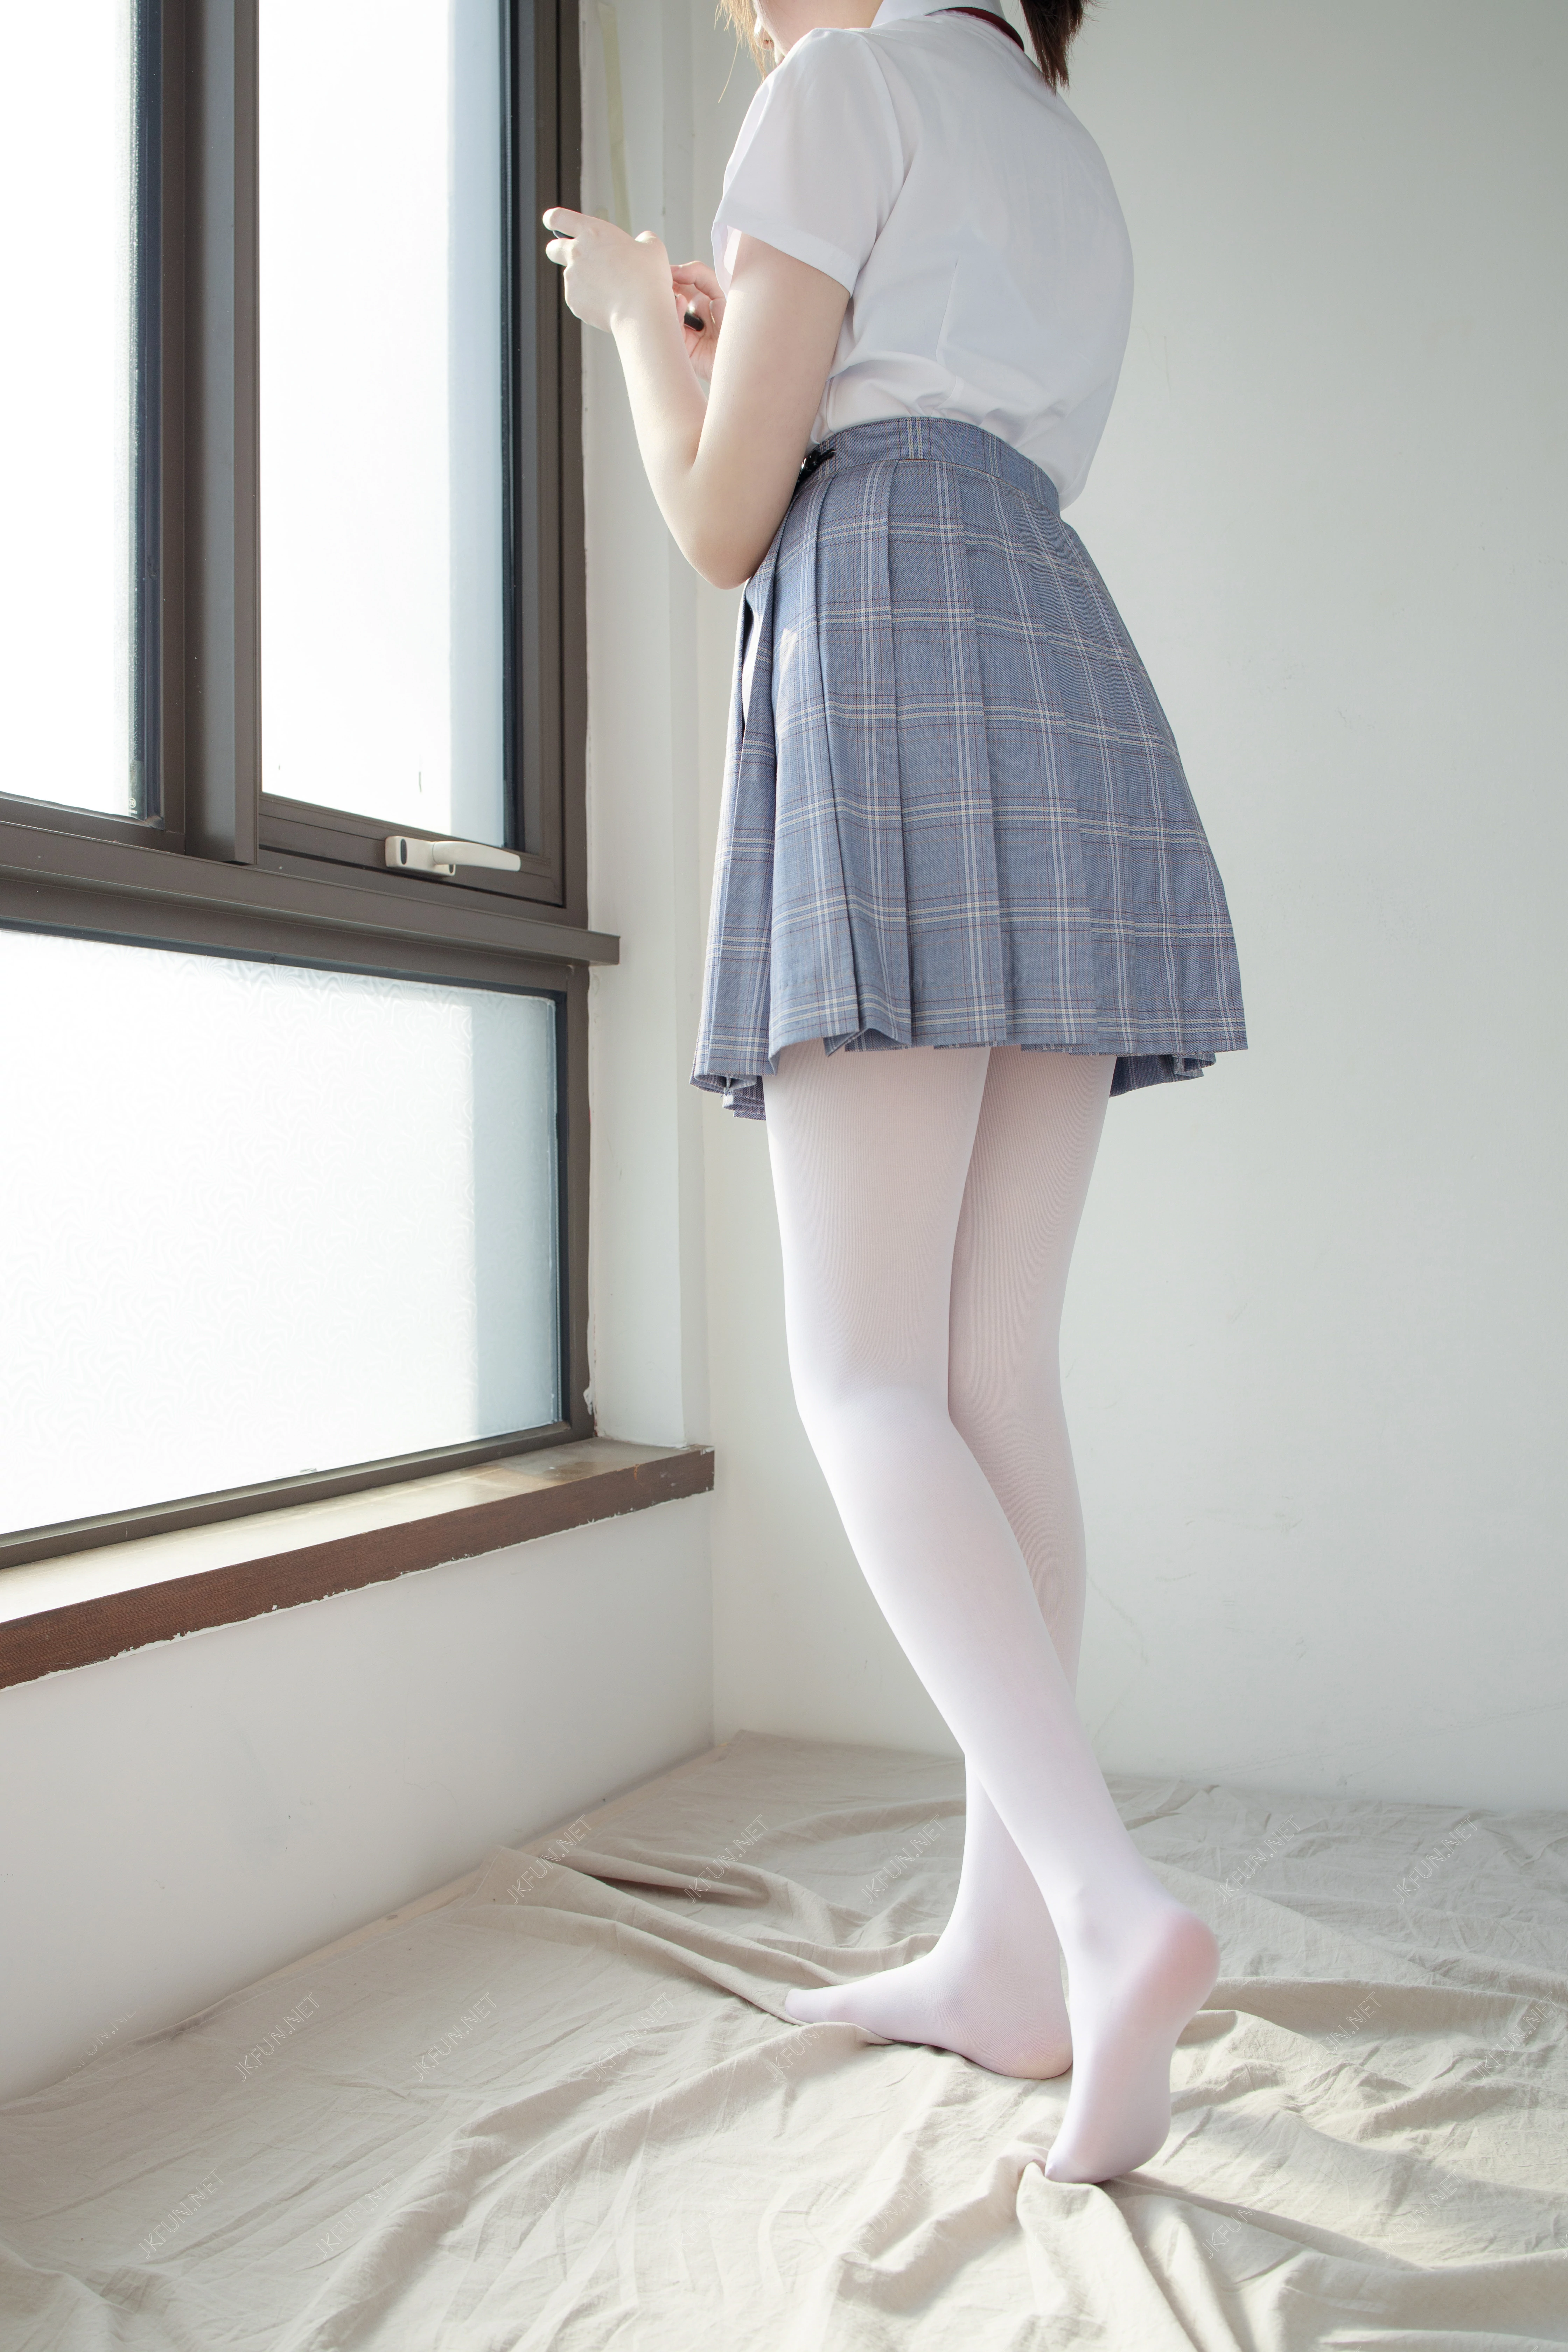 [森萝财团]JKFUN-002 清纯可爱小萝莉 Aika 高中女生制服与黑色短裙加白色丝袜美腿性感私房写真集,